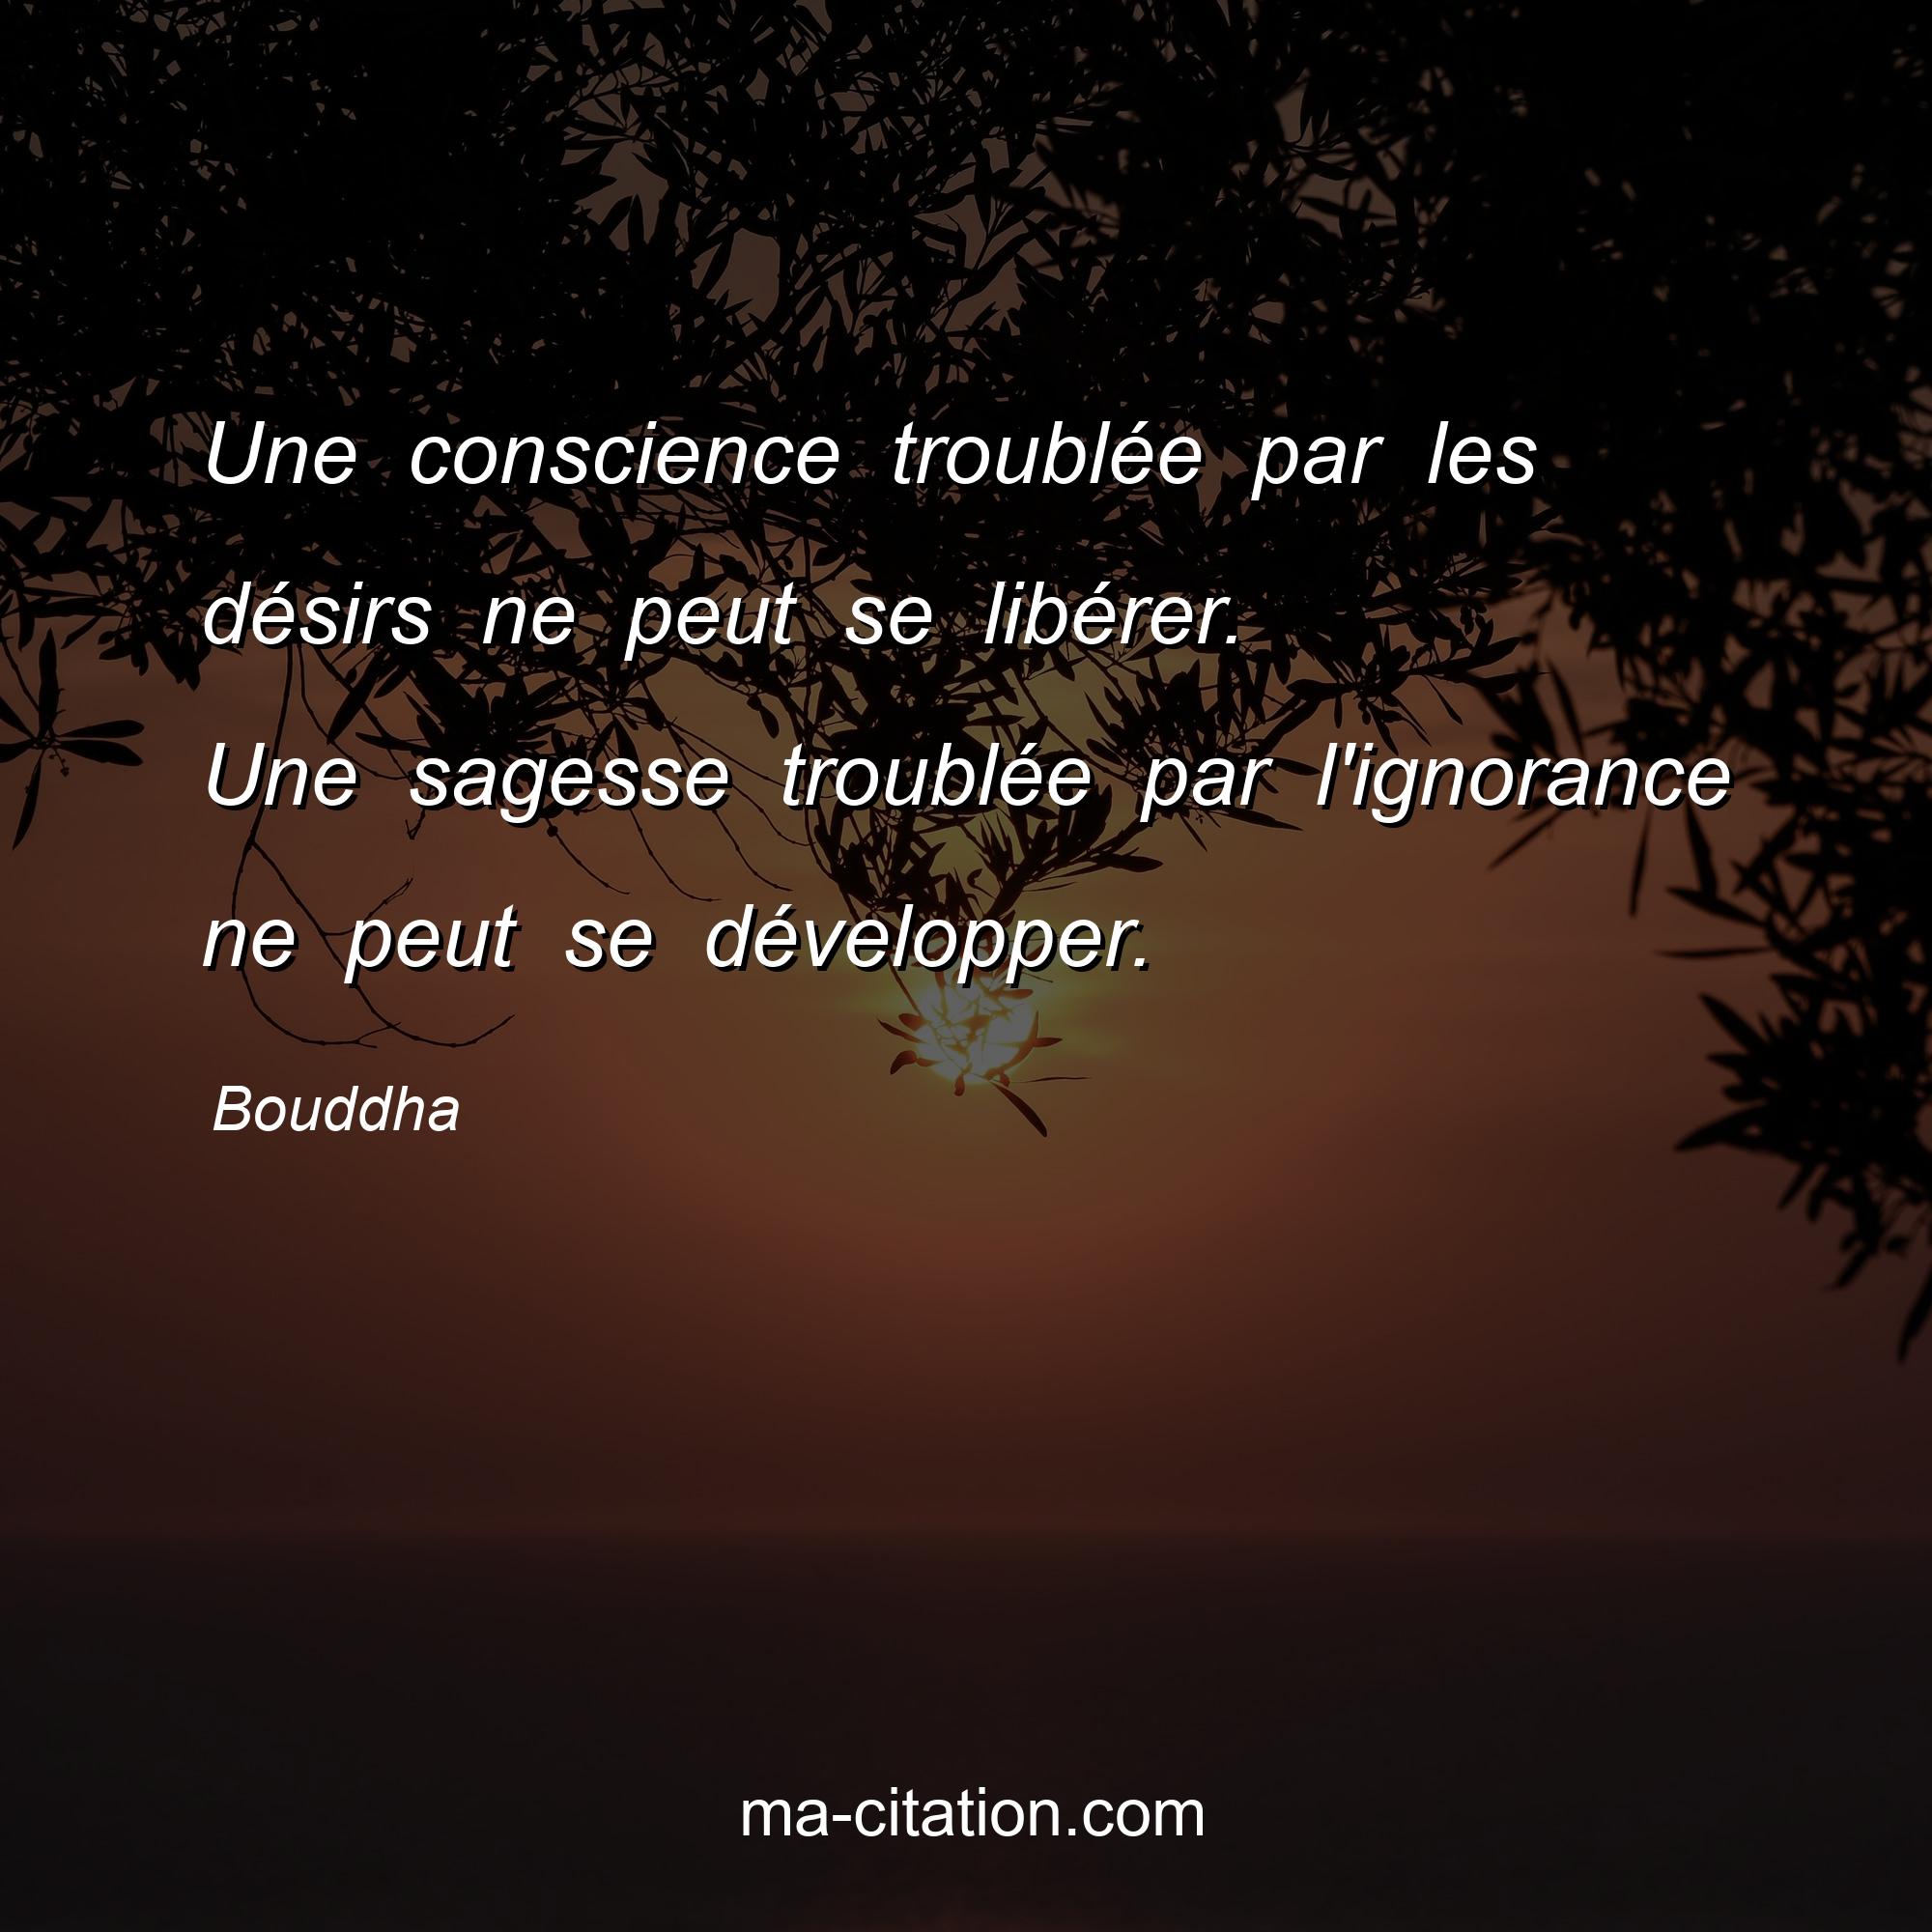 Bouddha : Une conscience troublée par les désirs ne peut se libérer. Une sagesse troublée par l'ignorance ne peut se développer.